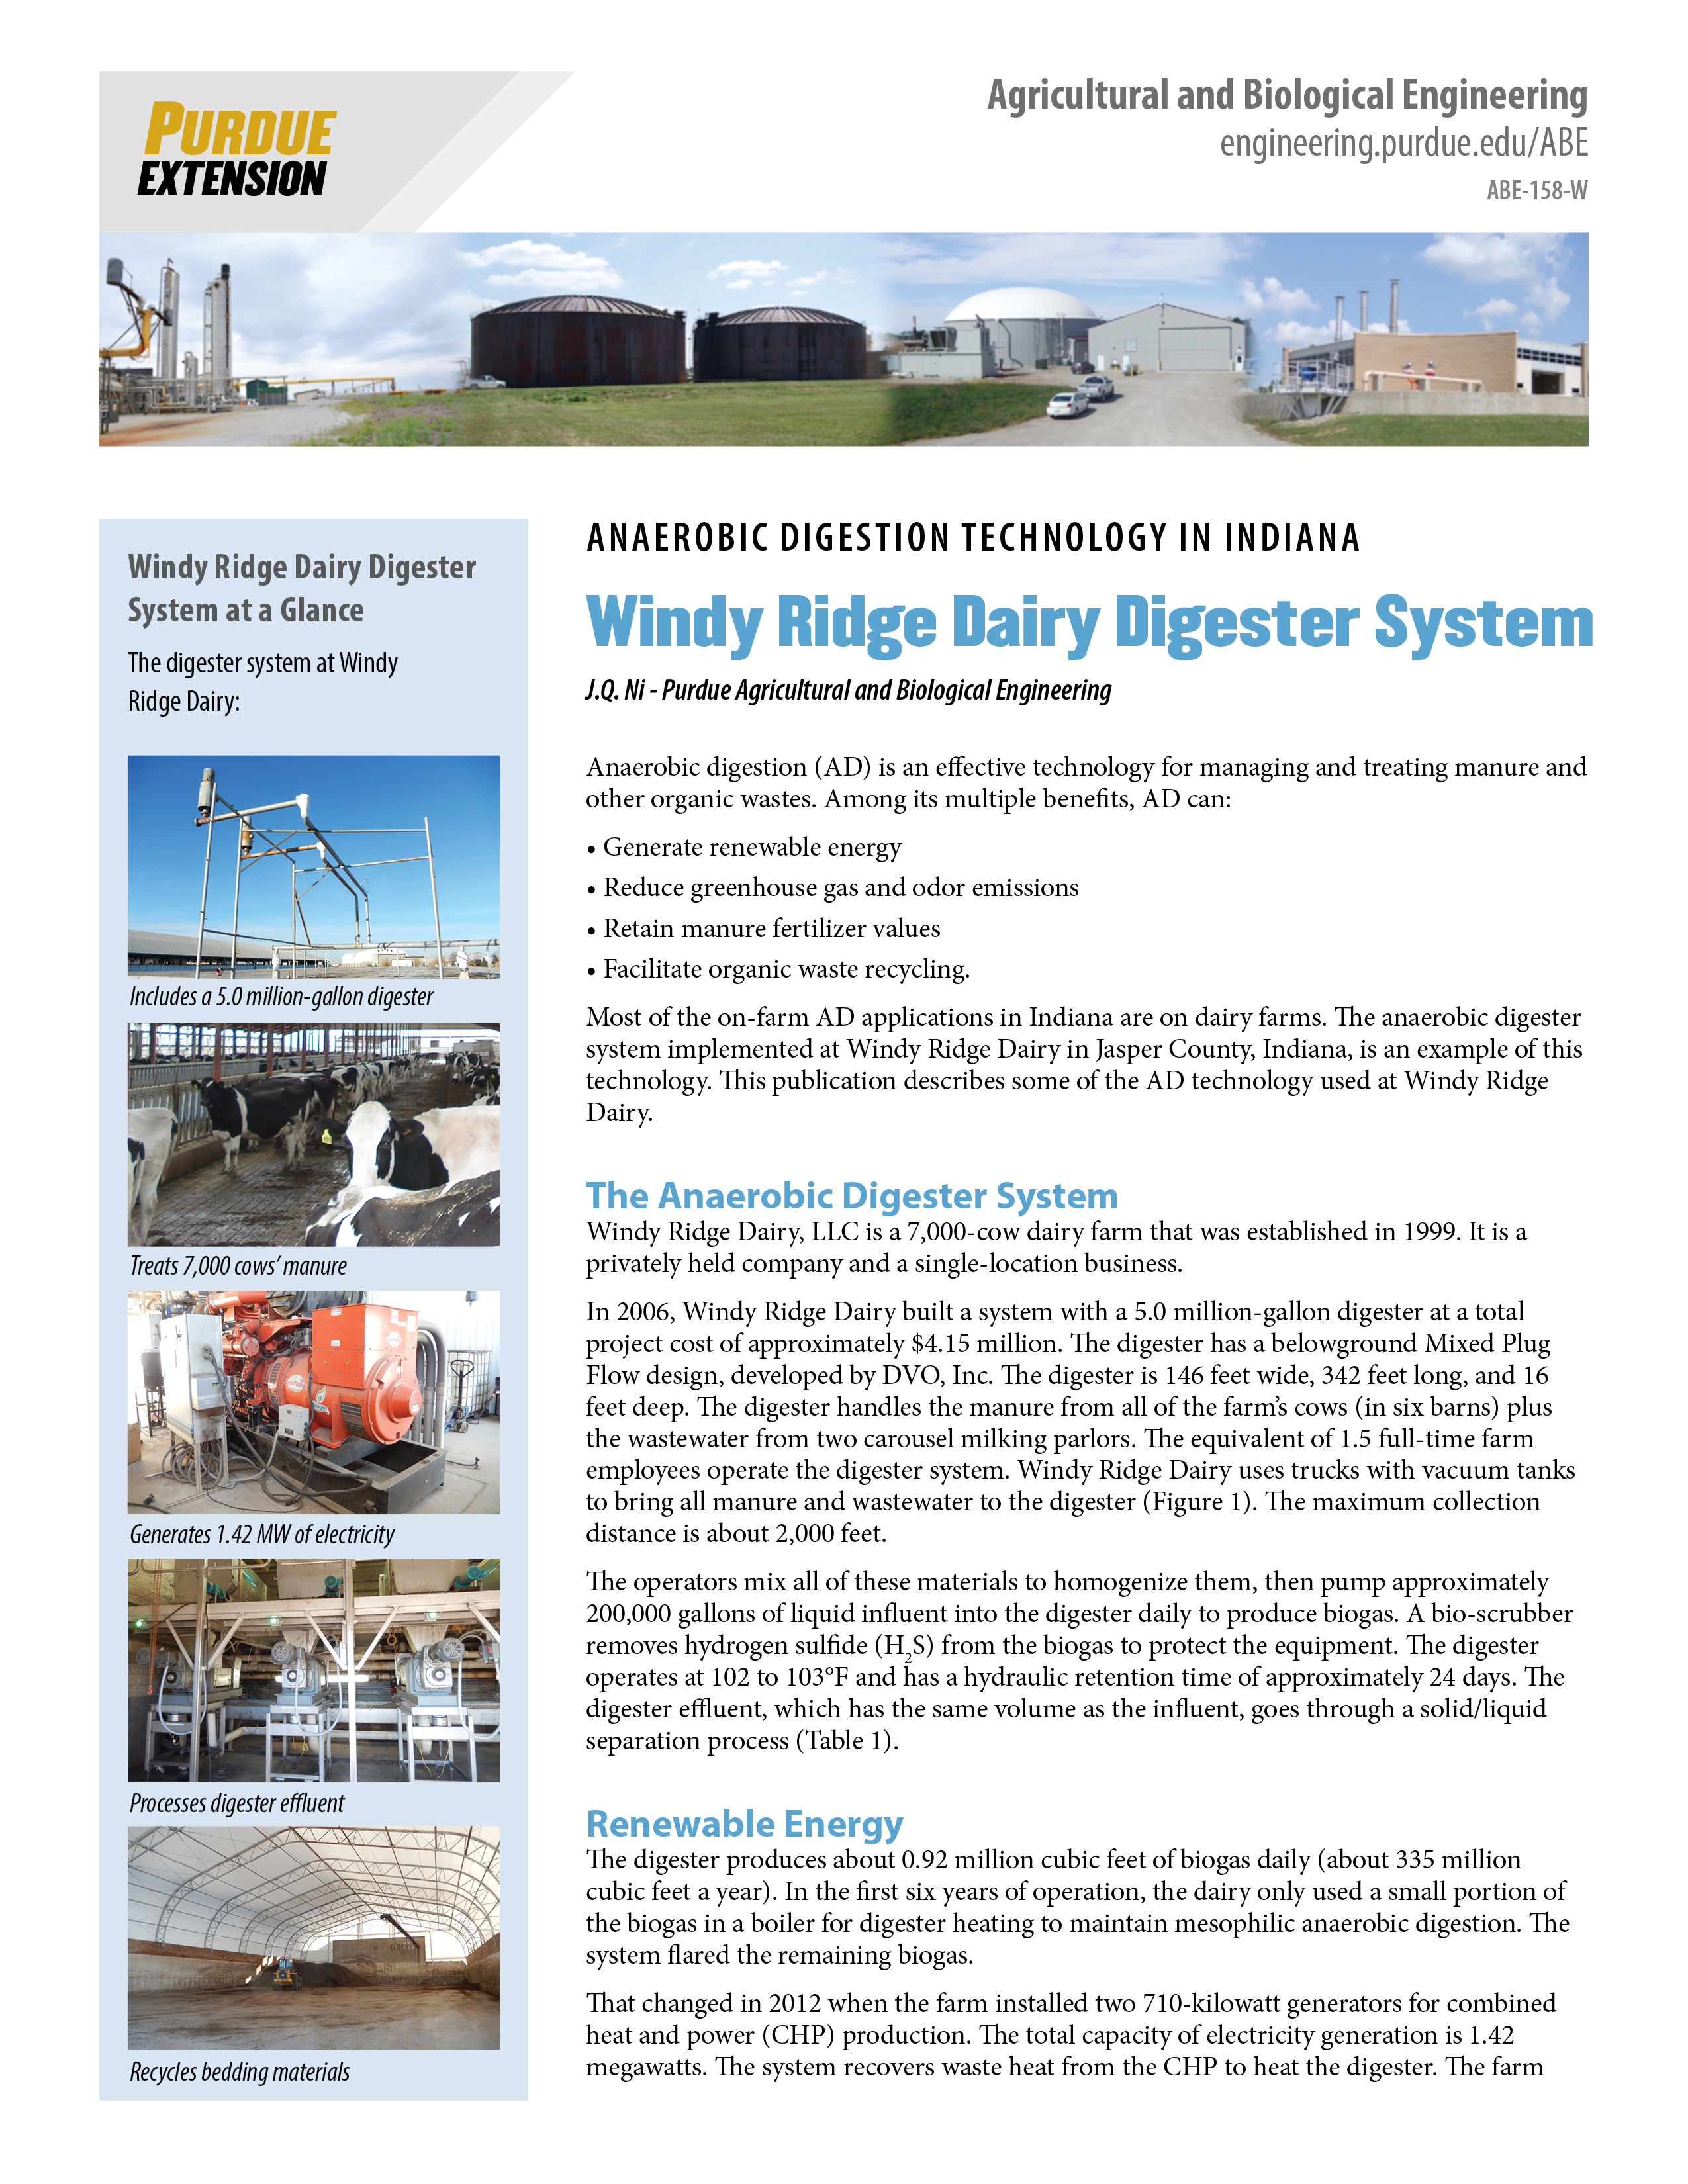 Anaerobic Digestion Technology: Windy Ridge Dairy